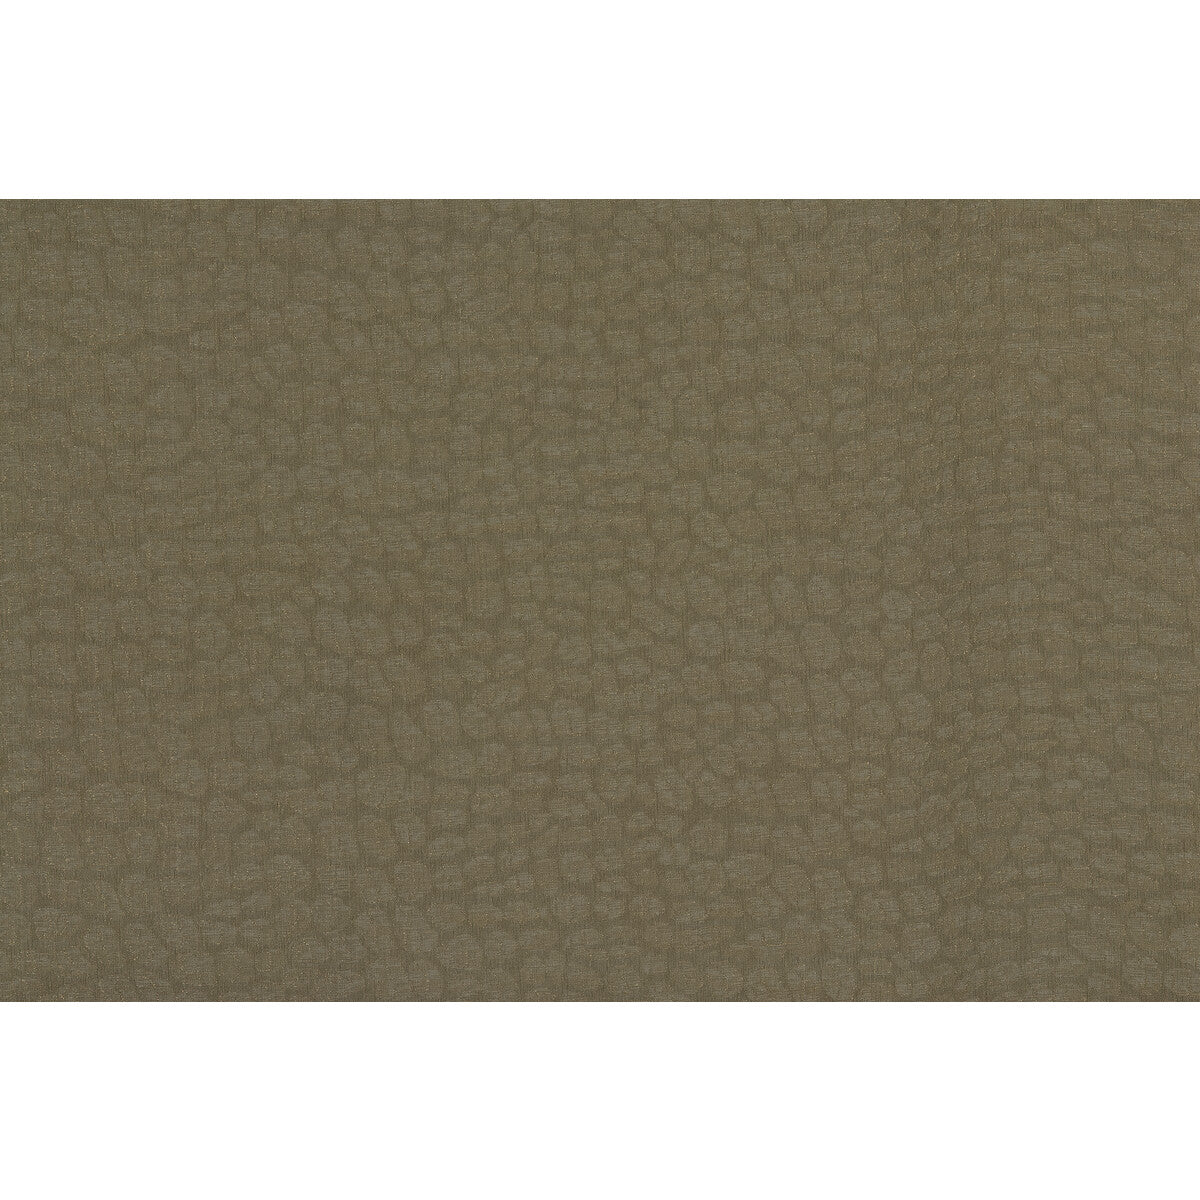 Kravet Basics fabric in 4294-6 color - pattern 4294.6.0 - by Kravet Basics